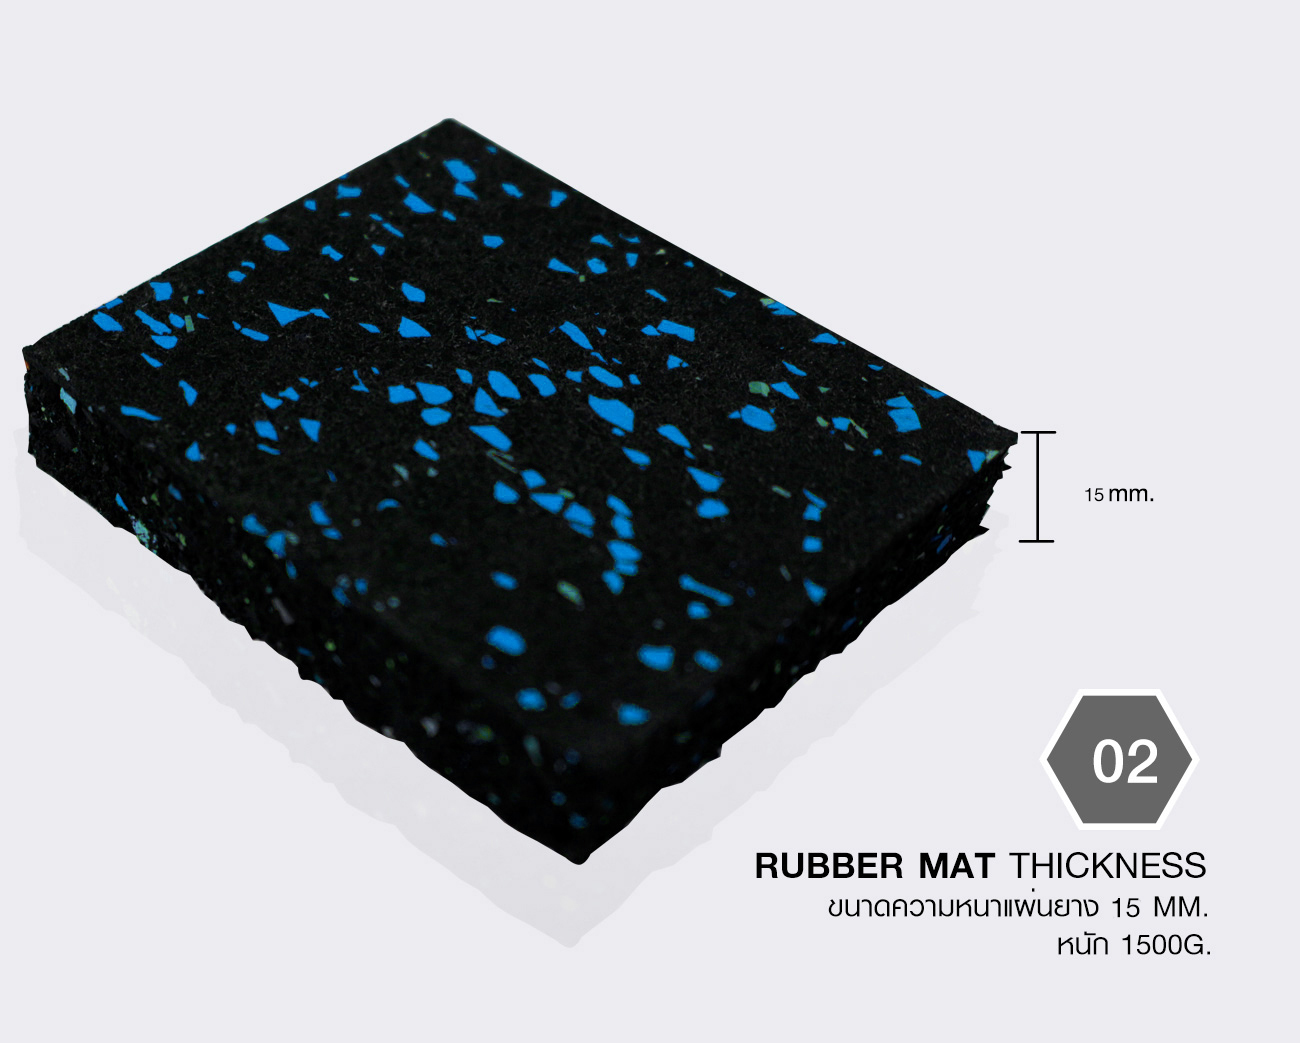 แผ่นยางปูพื้นฟิตเนส (แบบแผ่น) หนา 15 มิลลิเมตร สีฟ้า Rubber Gym Flooring Tile 15mm. Blue MSA03